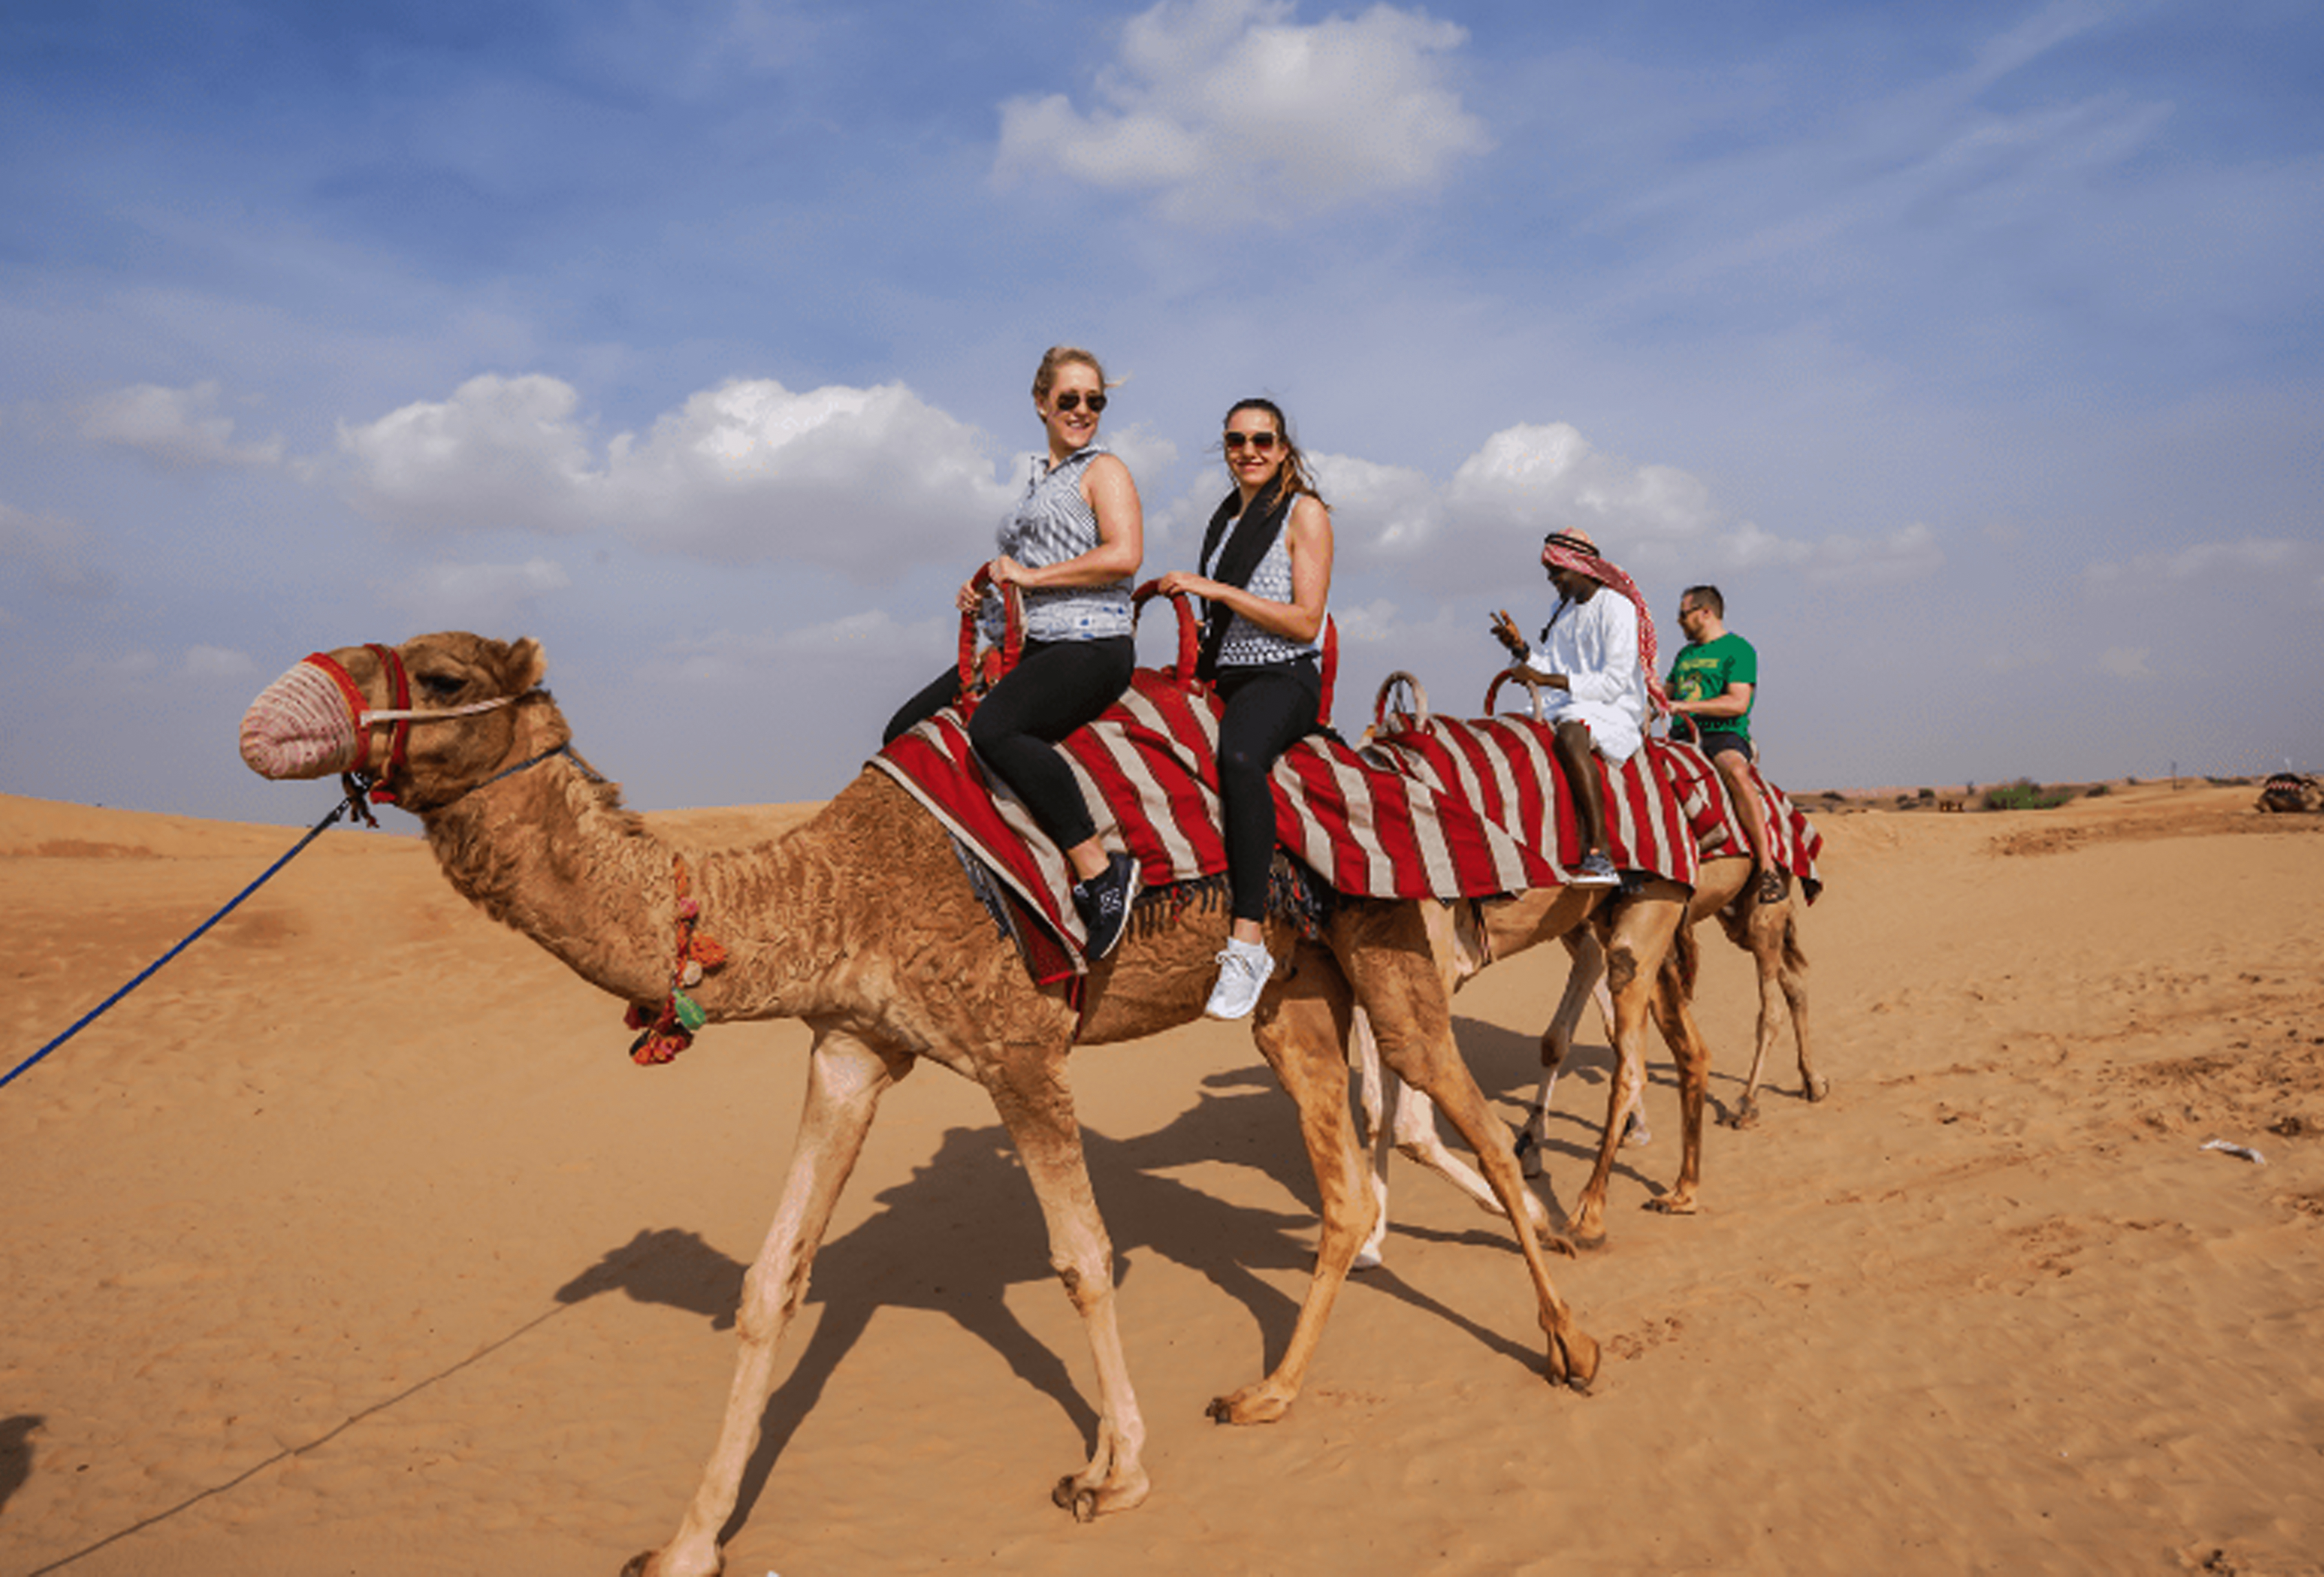 Dubai Travel Tourism